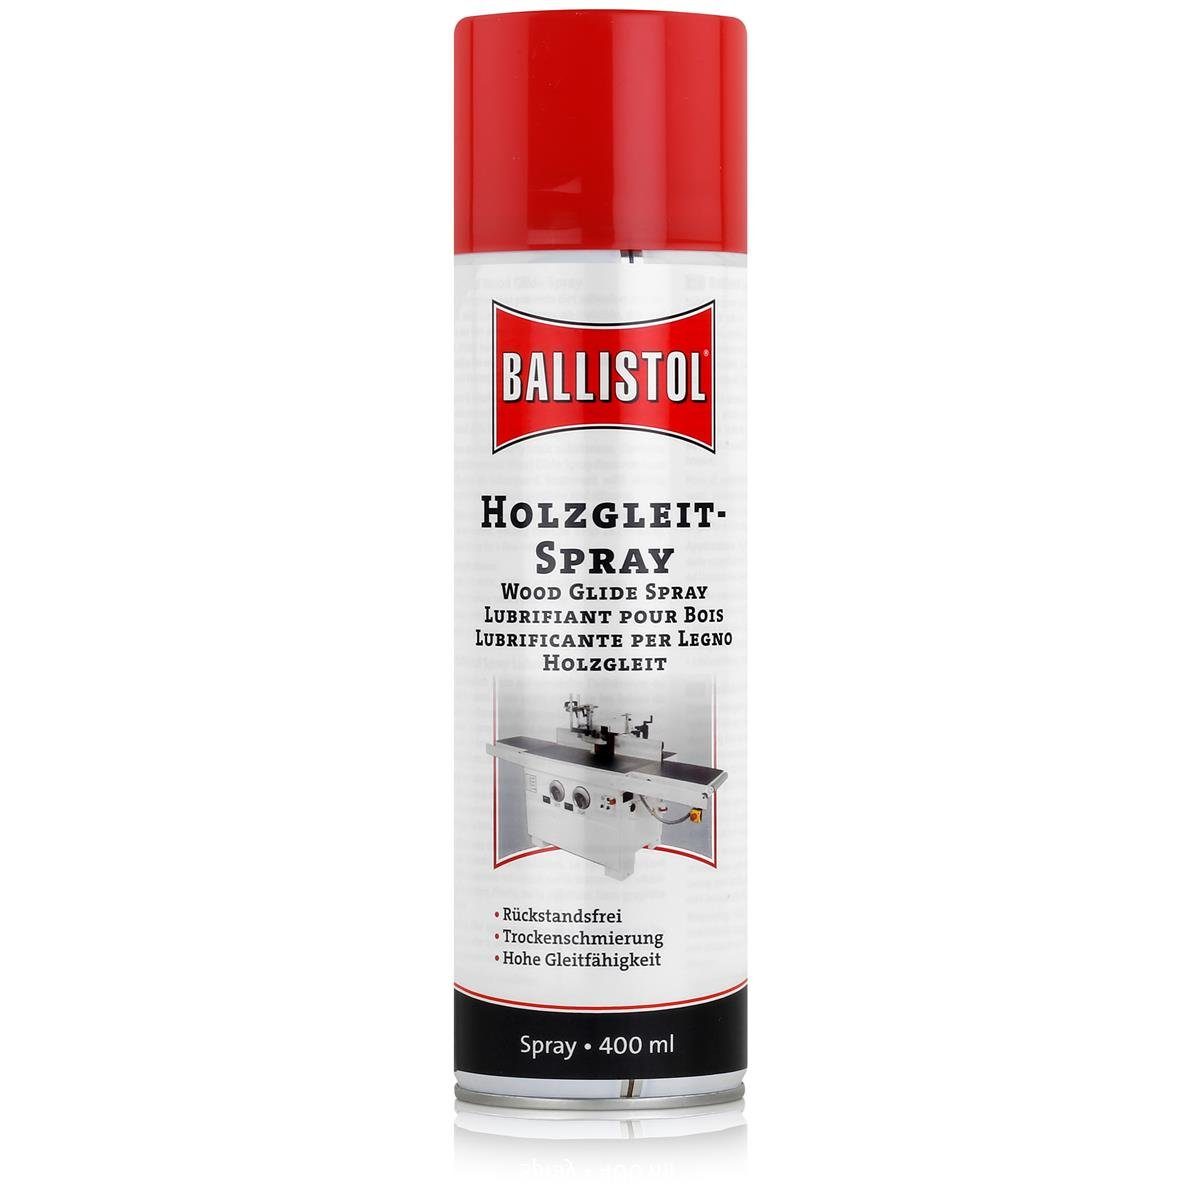 (1 Rückstandsfrei Multifunktionsöl Trockenschmierung, Spray Holzgleit - Ballistol Ballistol 400ml